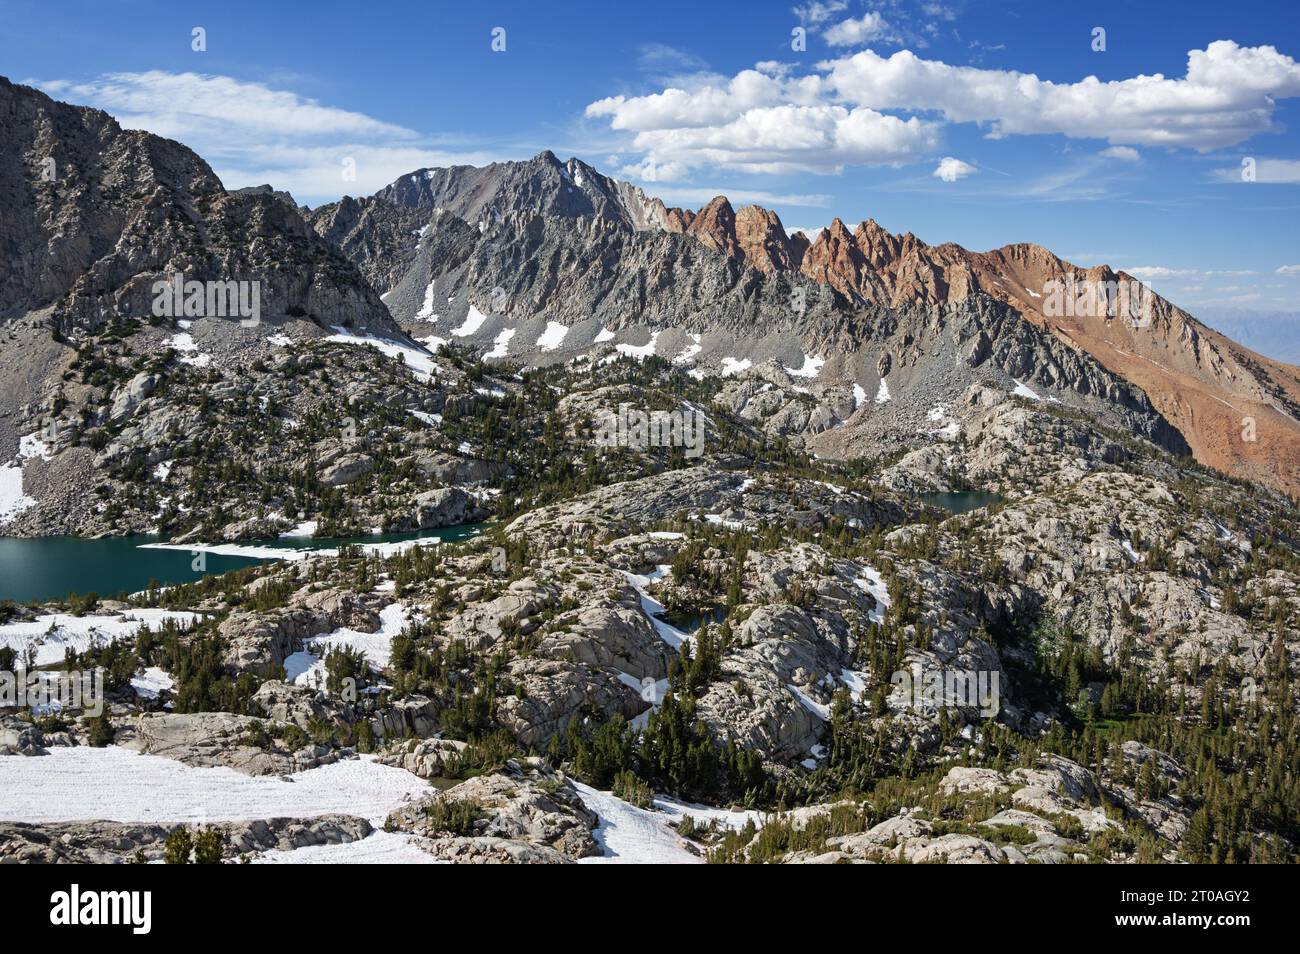 Lamarck Lakes Mount Emerson et Piute Crags dans les montagnes de l'est de la Sierra Nevada près de Bishop California Banque D'Images